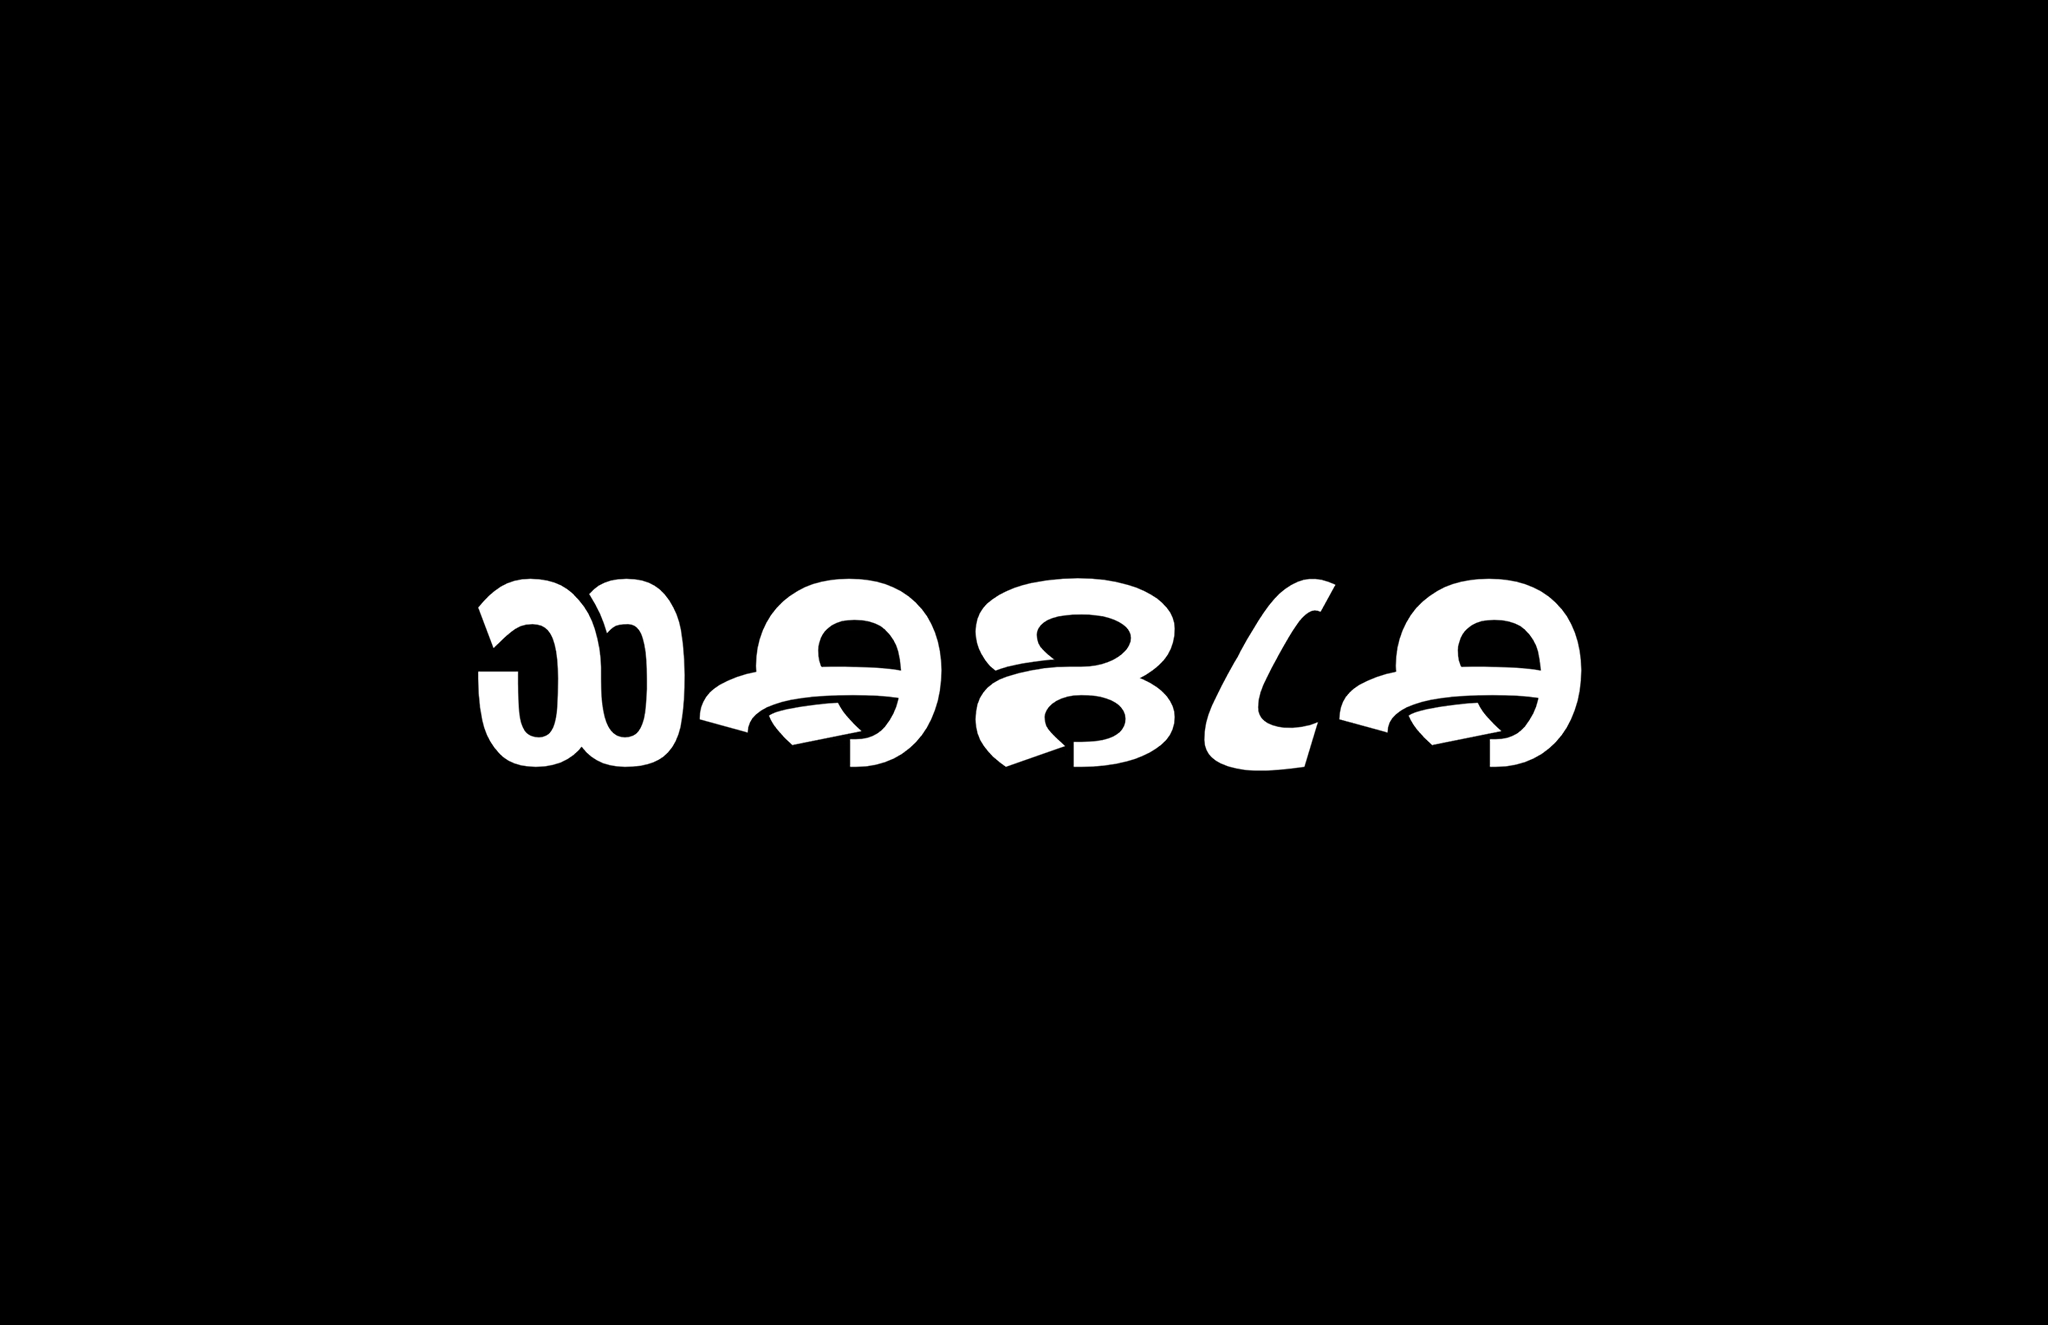 Wabla Typeface Animation